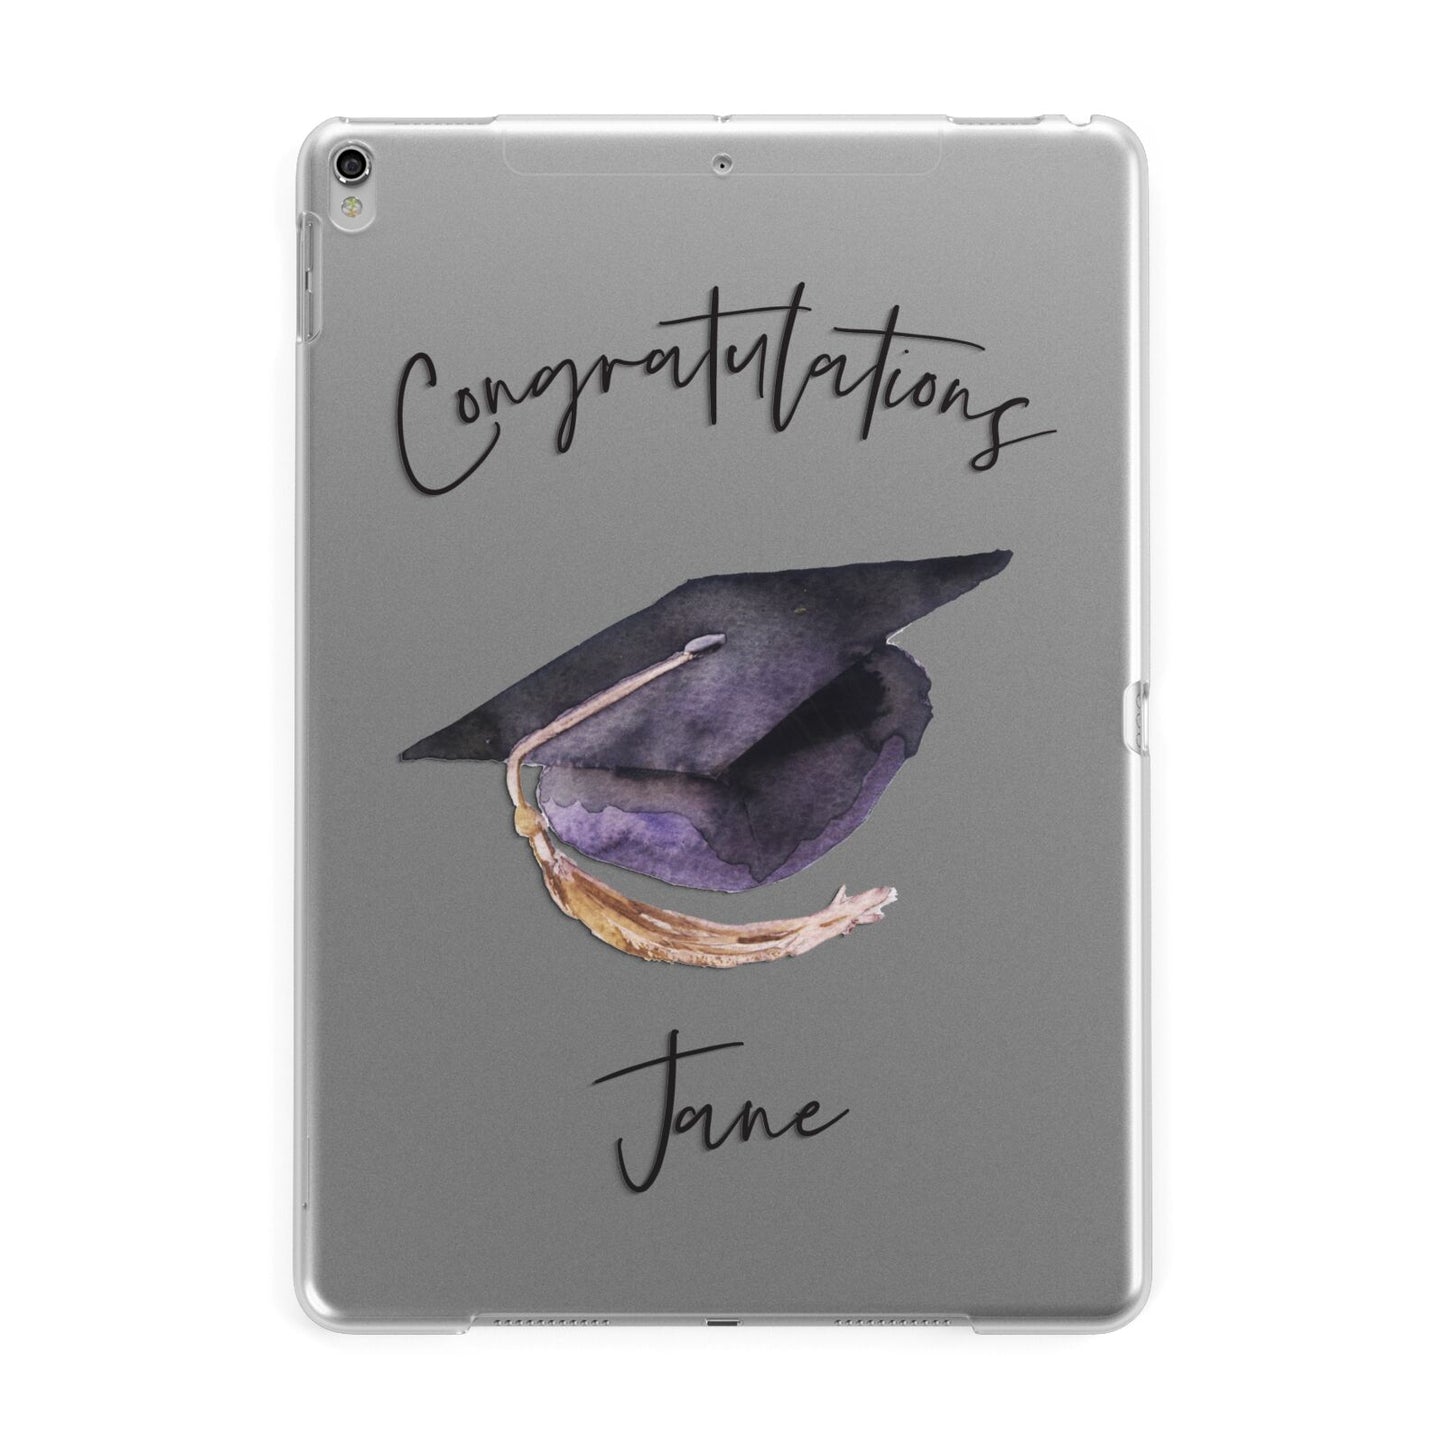 Congratulations Graduate Custom Apple iPad Silver Case